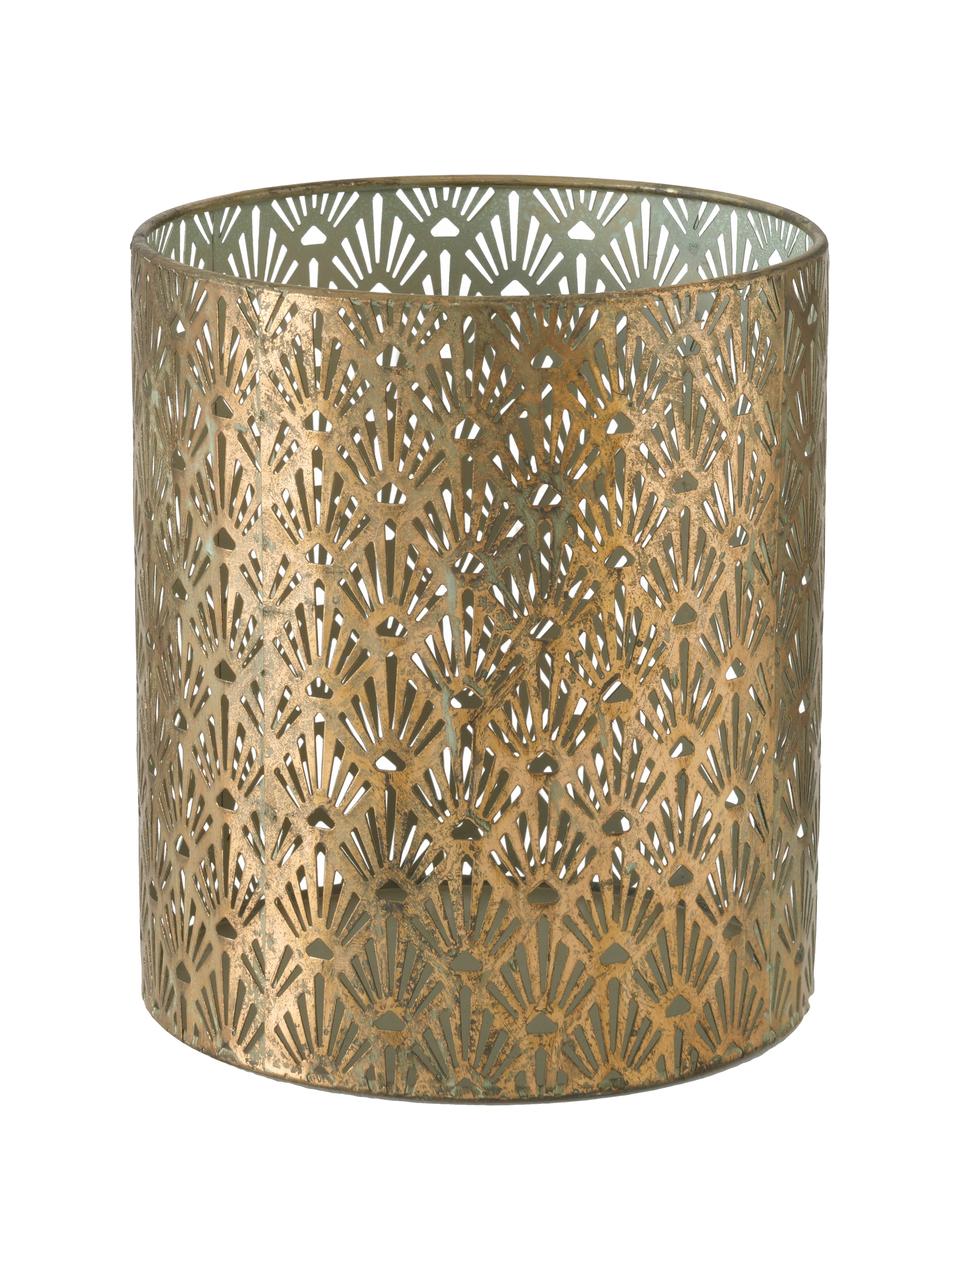 Großes handgefertigtes Windlicht-Set Marifa aus Metall, 3-tlg., Metall, lackiert, Goldfarben, Set mit verschiedenen Größen